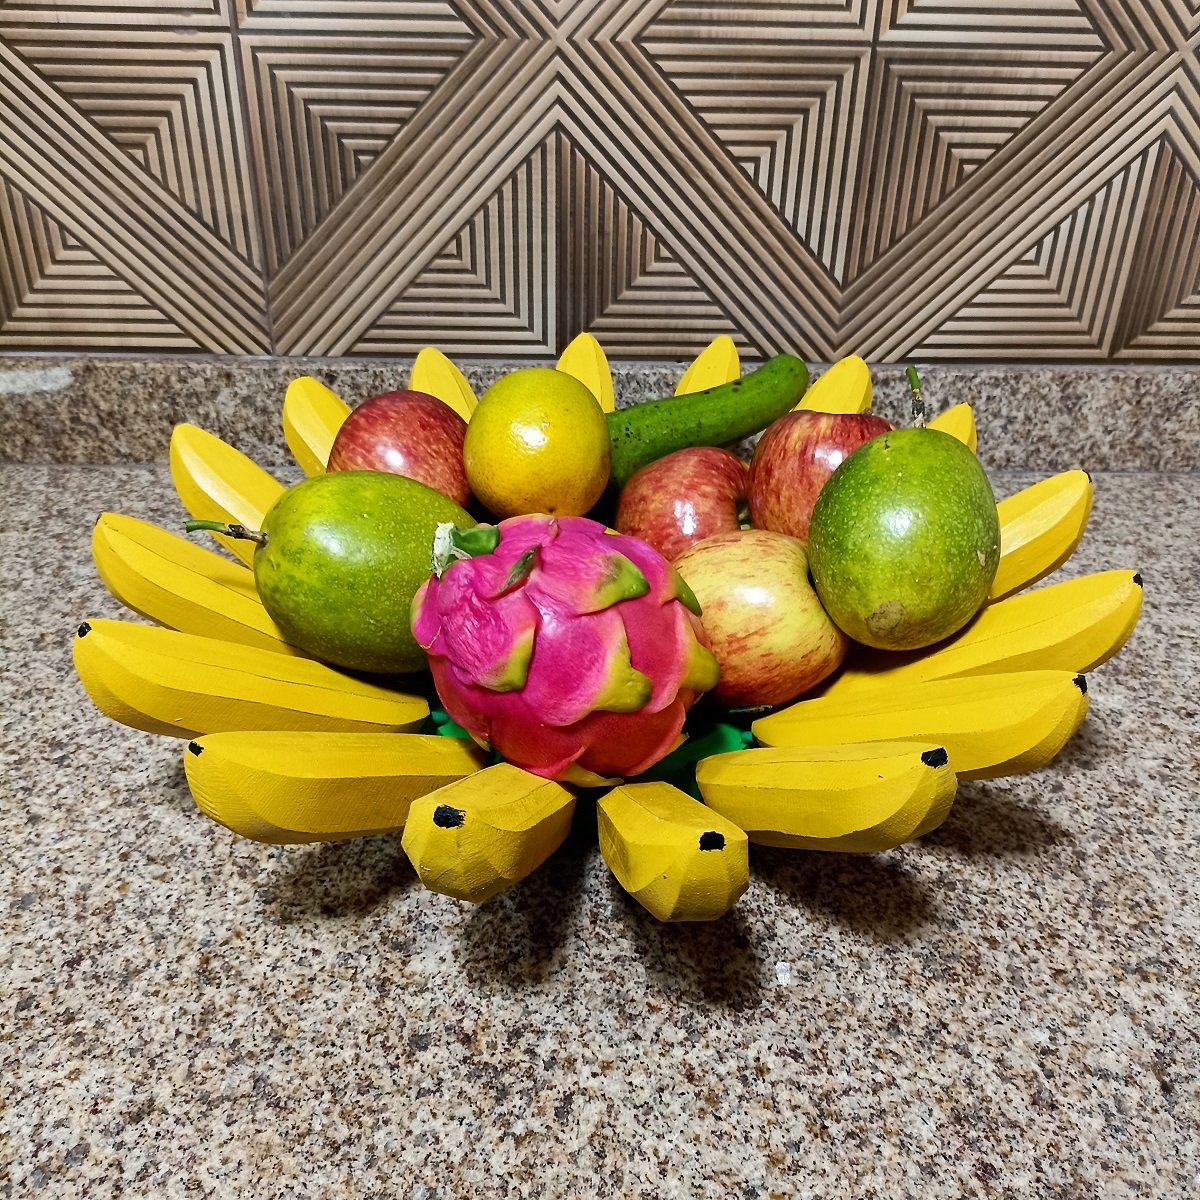 Fruteira Fruta de Mesa em Formato de Banana Artesanato Rústico Feito de Madeira super resistente ide - 1